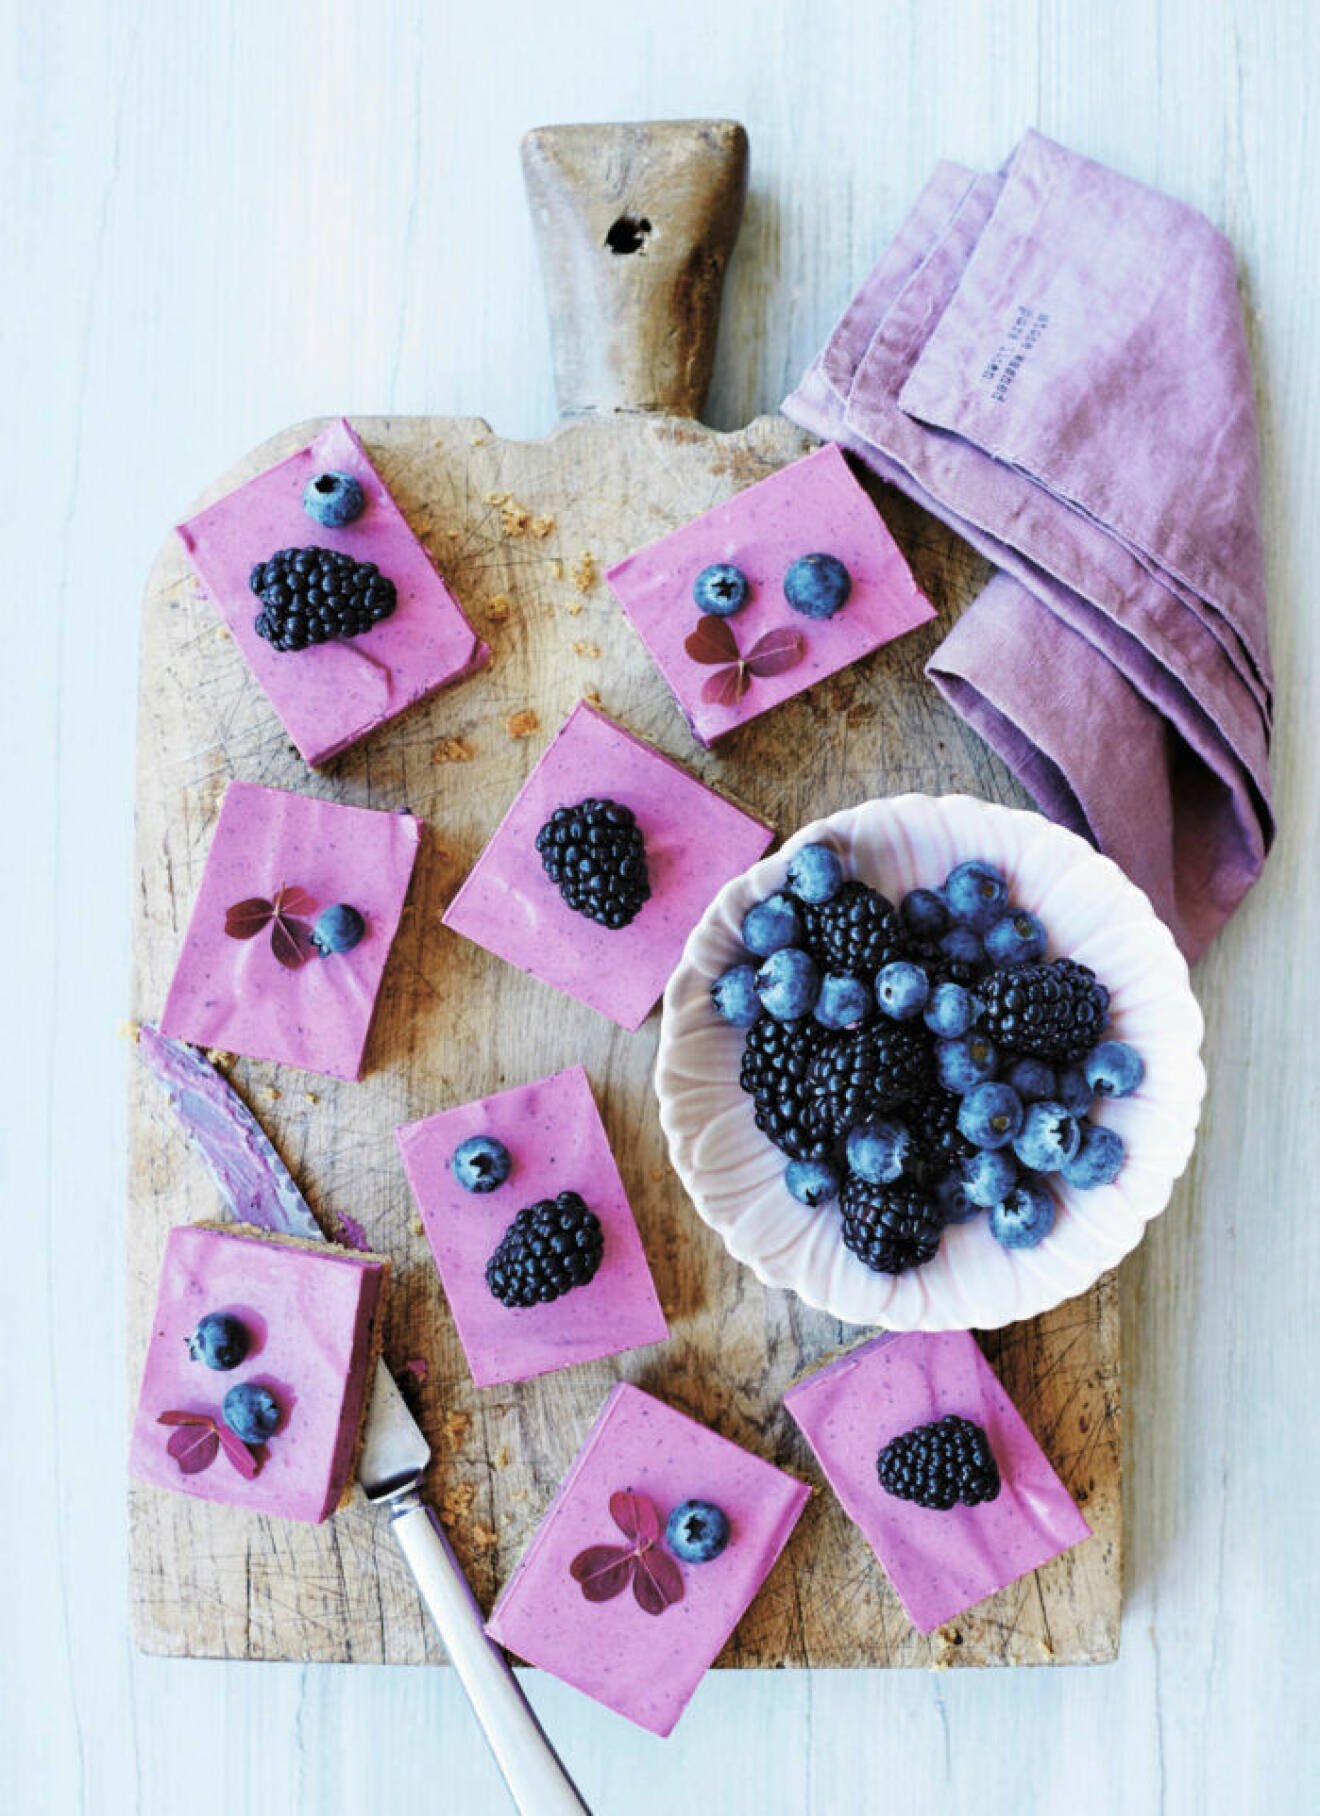 Recept på blåbärscheesecake med lakrits